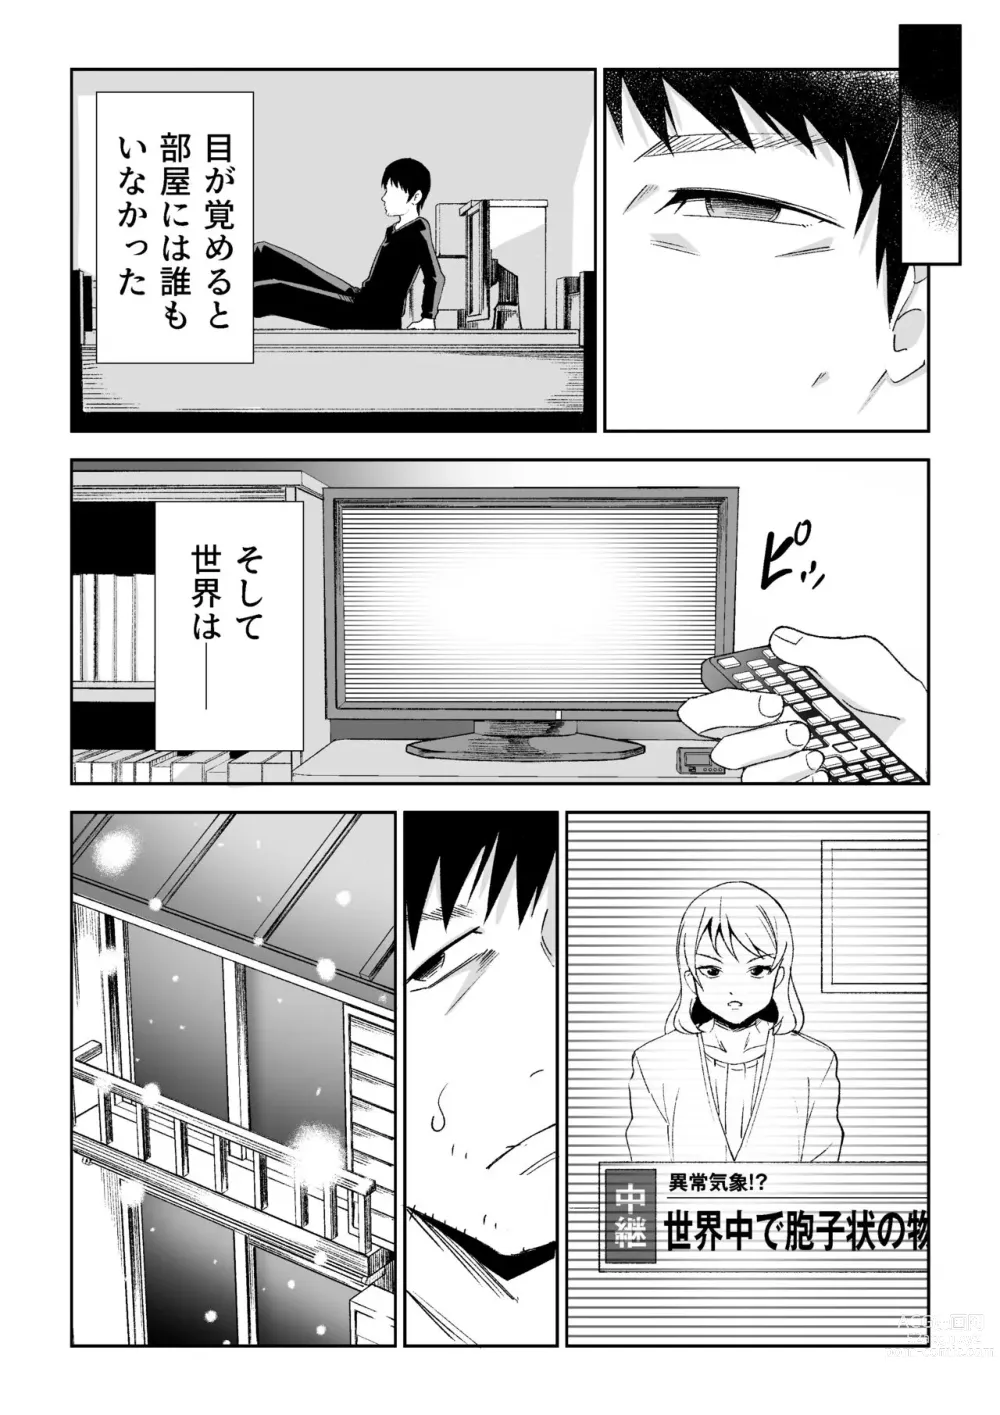 Page 16 of doujinshi Kasa ga Hiraku Toki